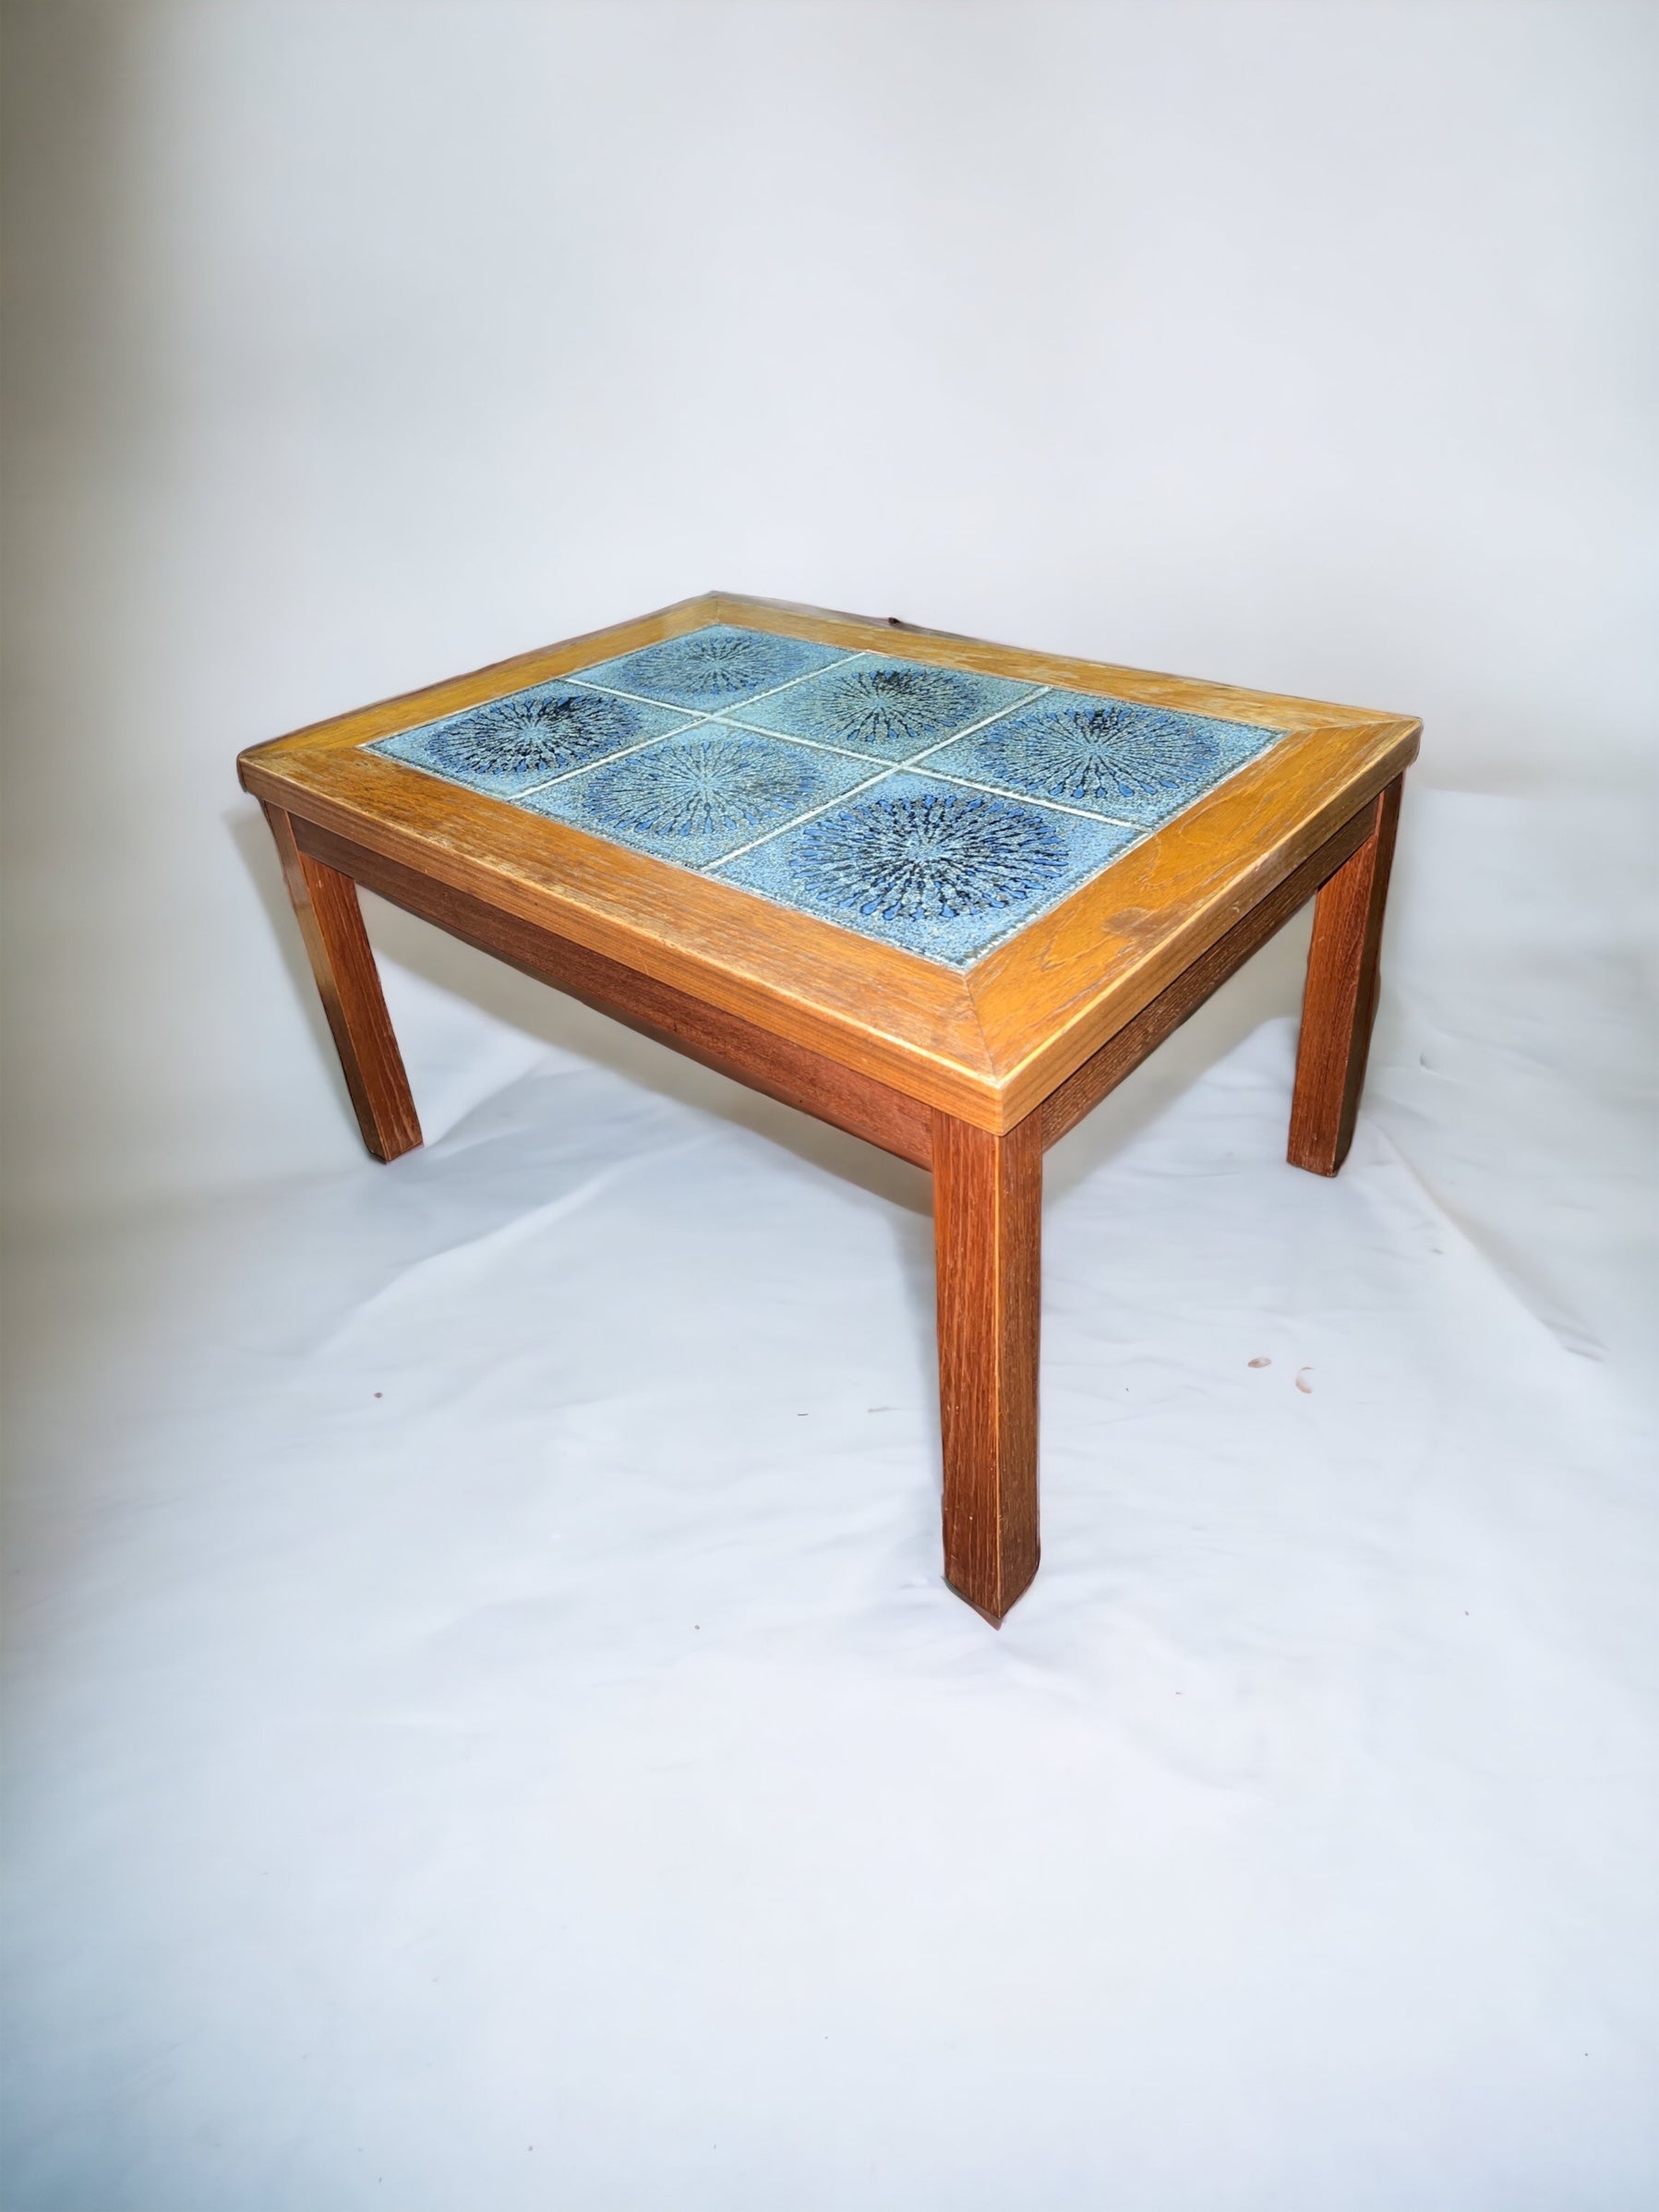 Teal Tile/Wooden Side Table